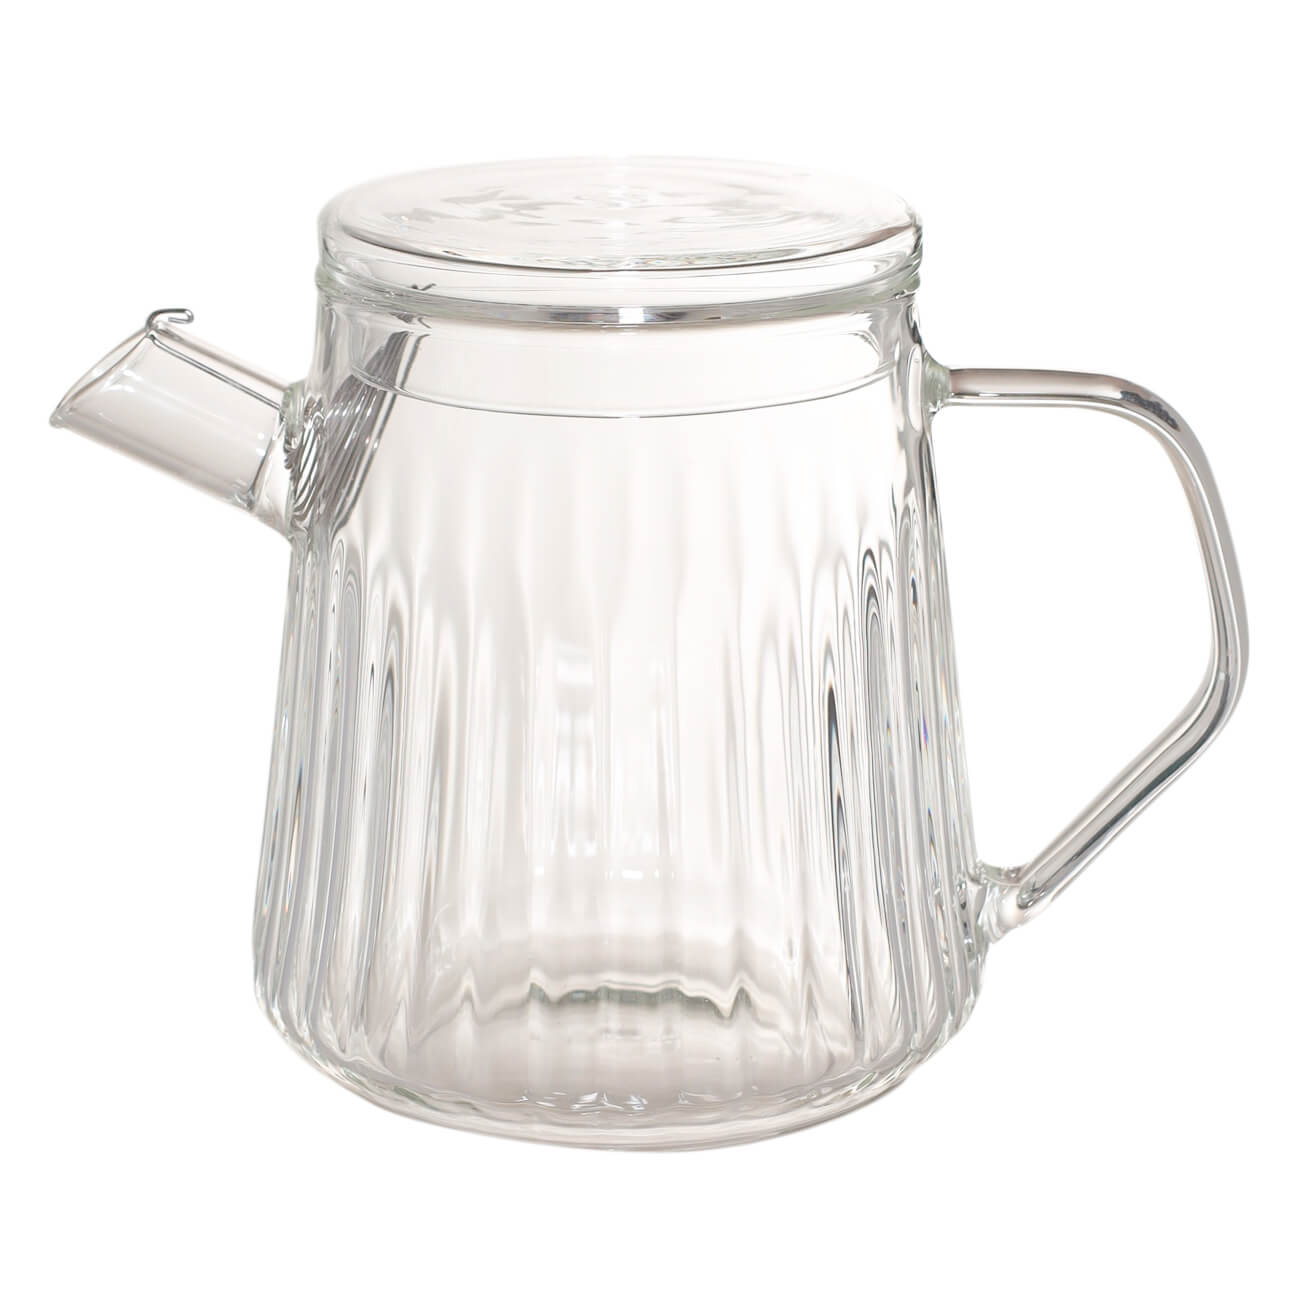 Чайник заварочный, 650 мл, стекло Б, Glacier kuchenland чайник заварочный 1 л стекло б дерево bell